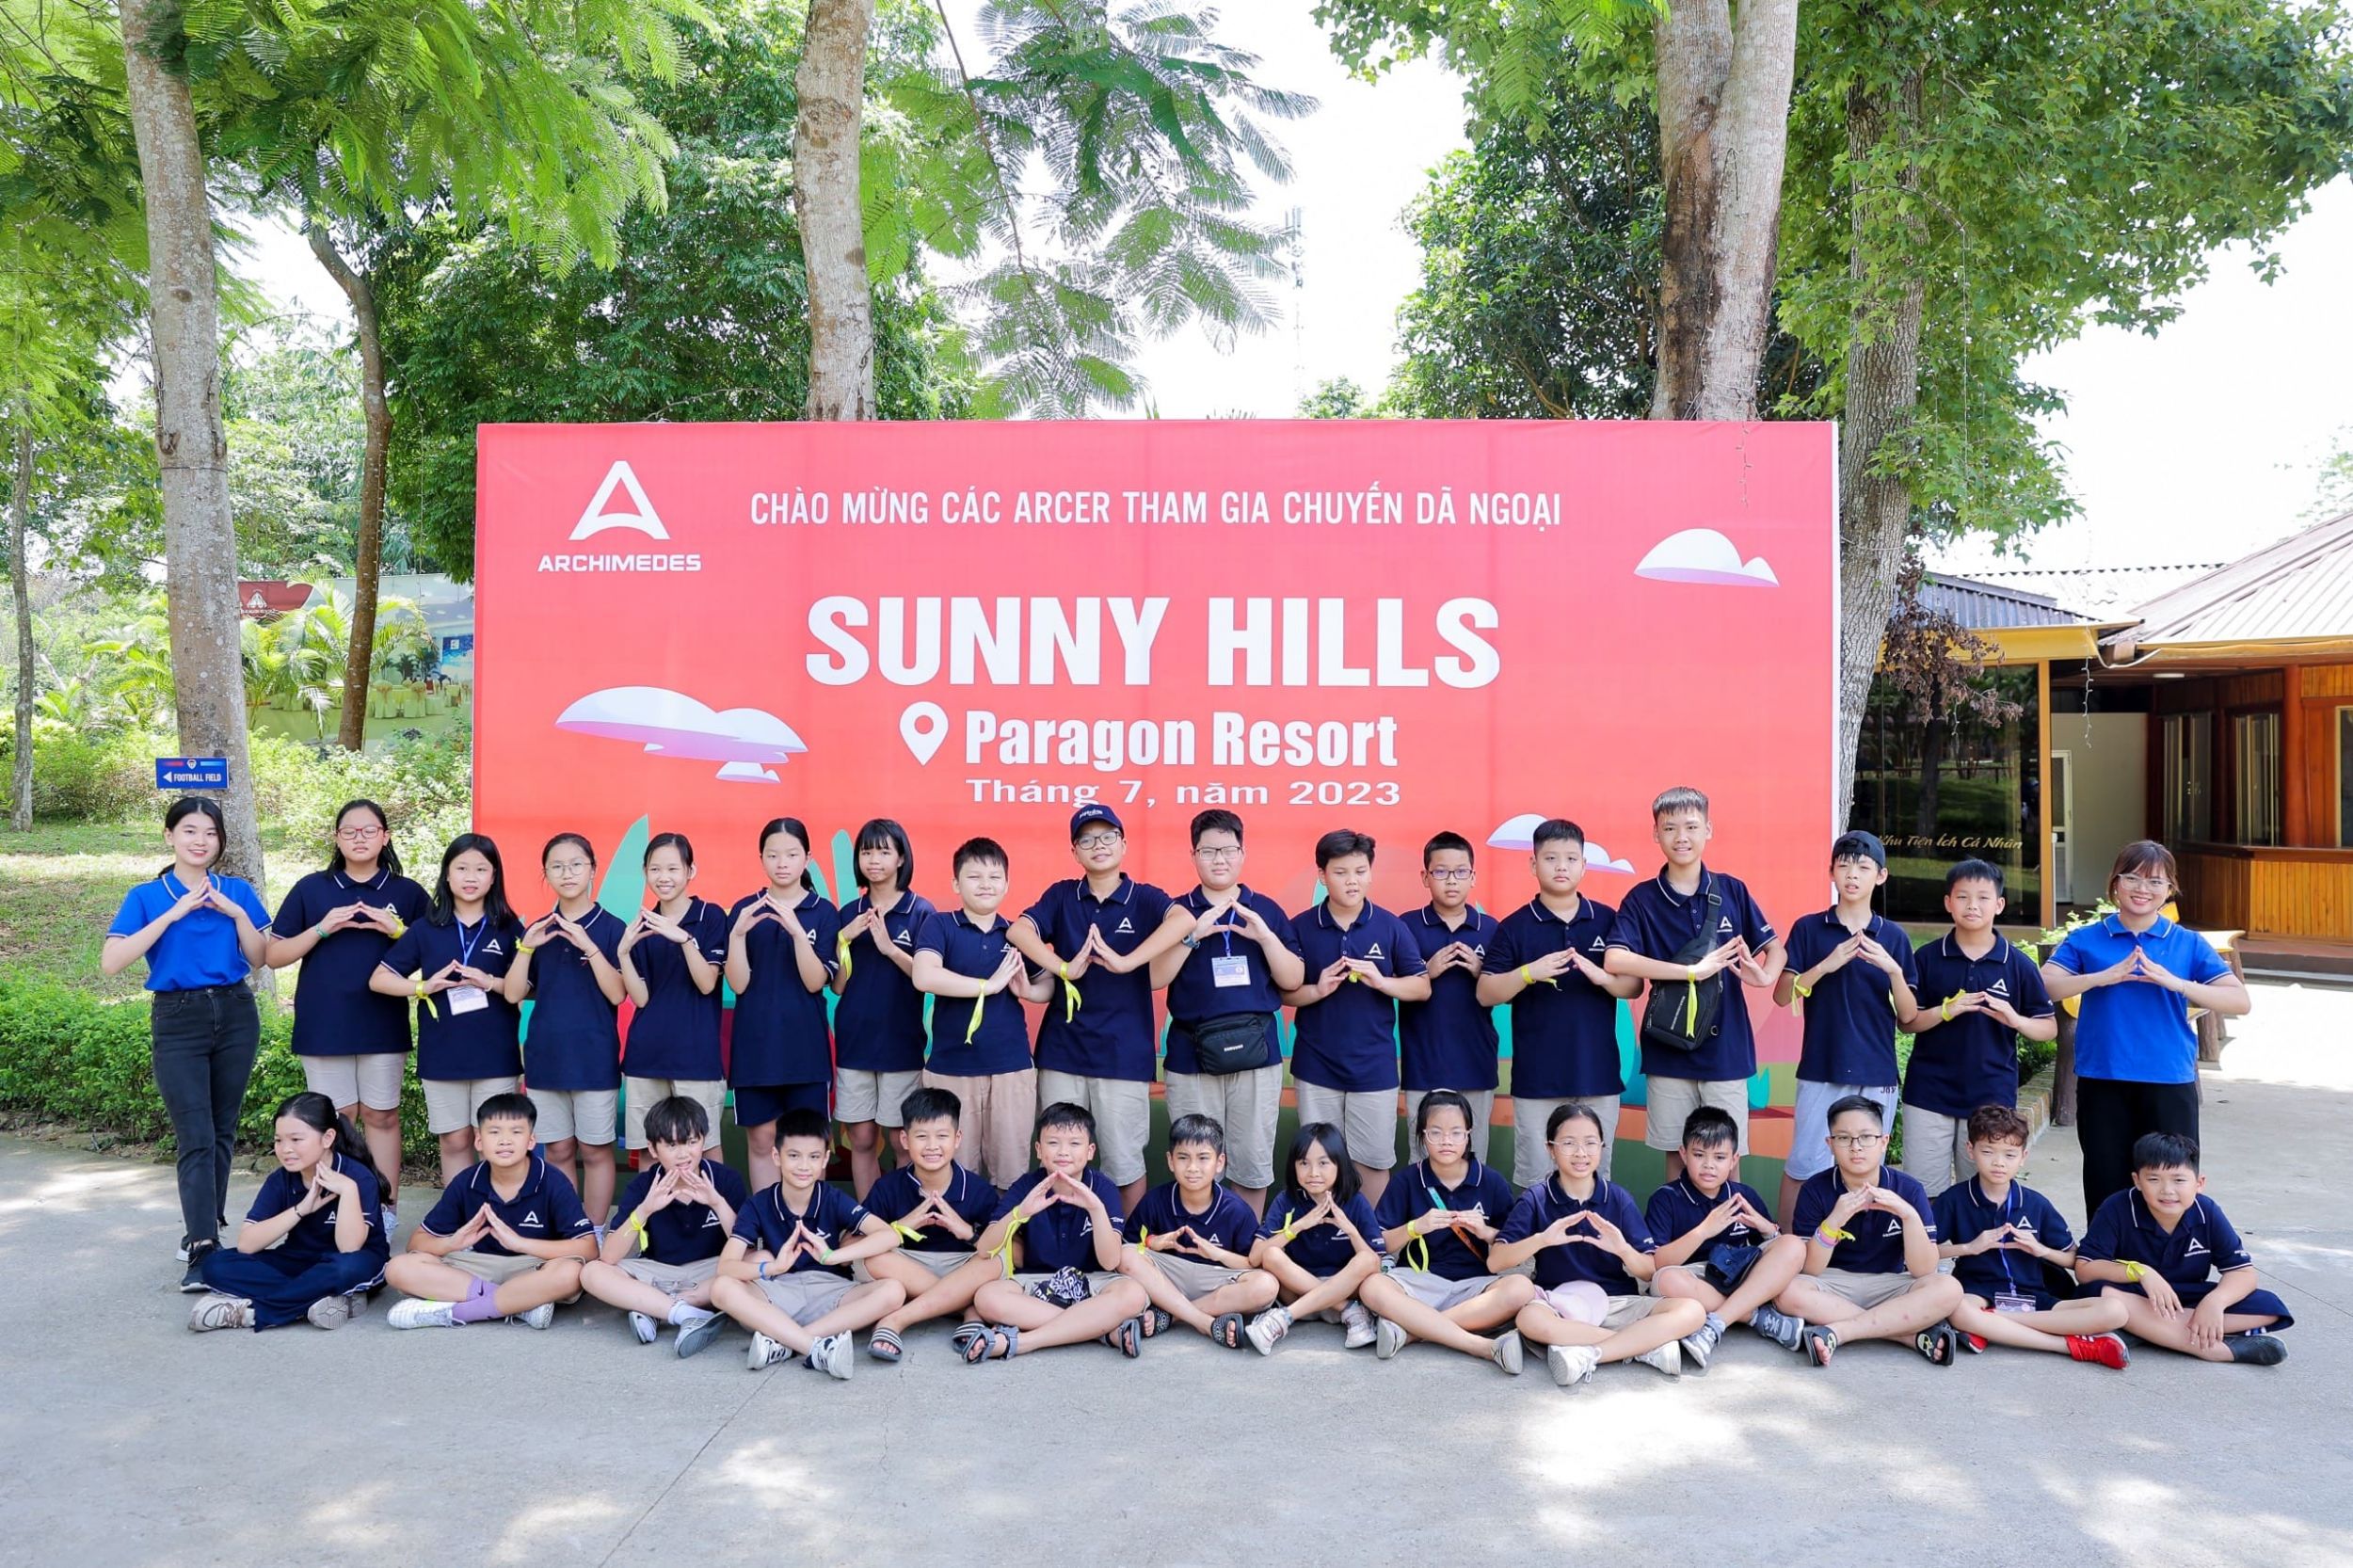  Arcers K6 tham gia chương trình dã ngoại hè Sunny Hills 2023: Enjoying nature - Enjoying life